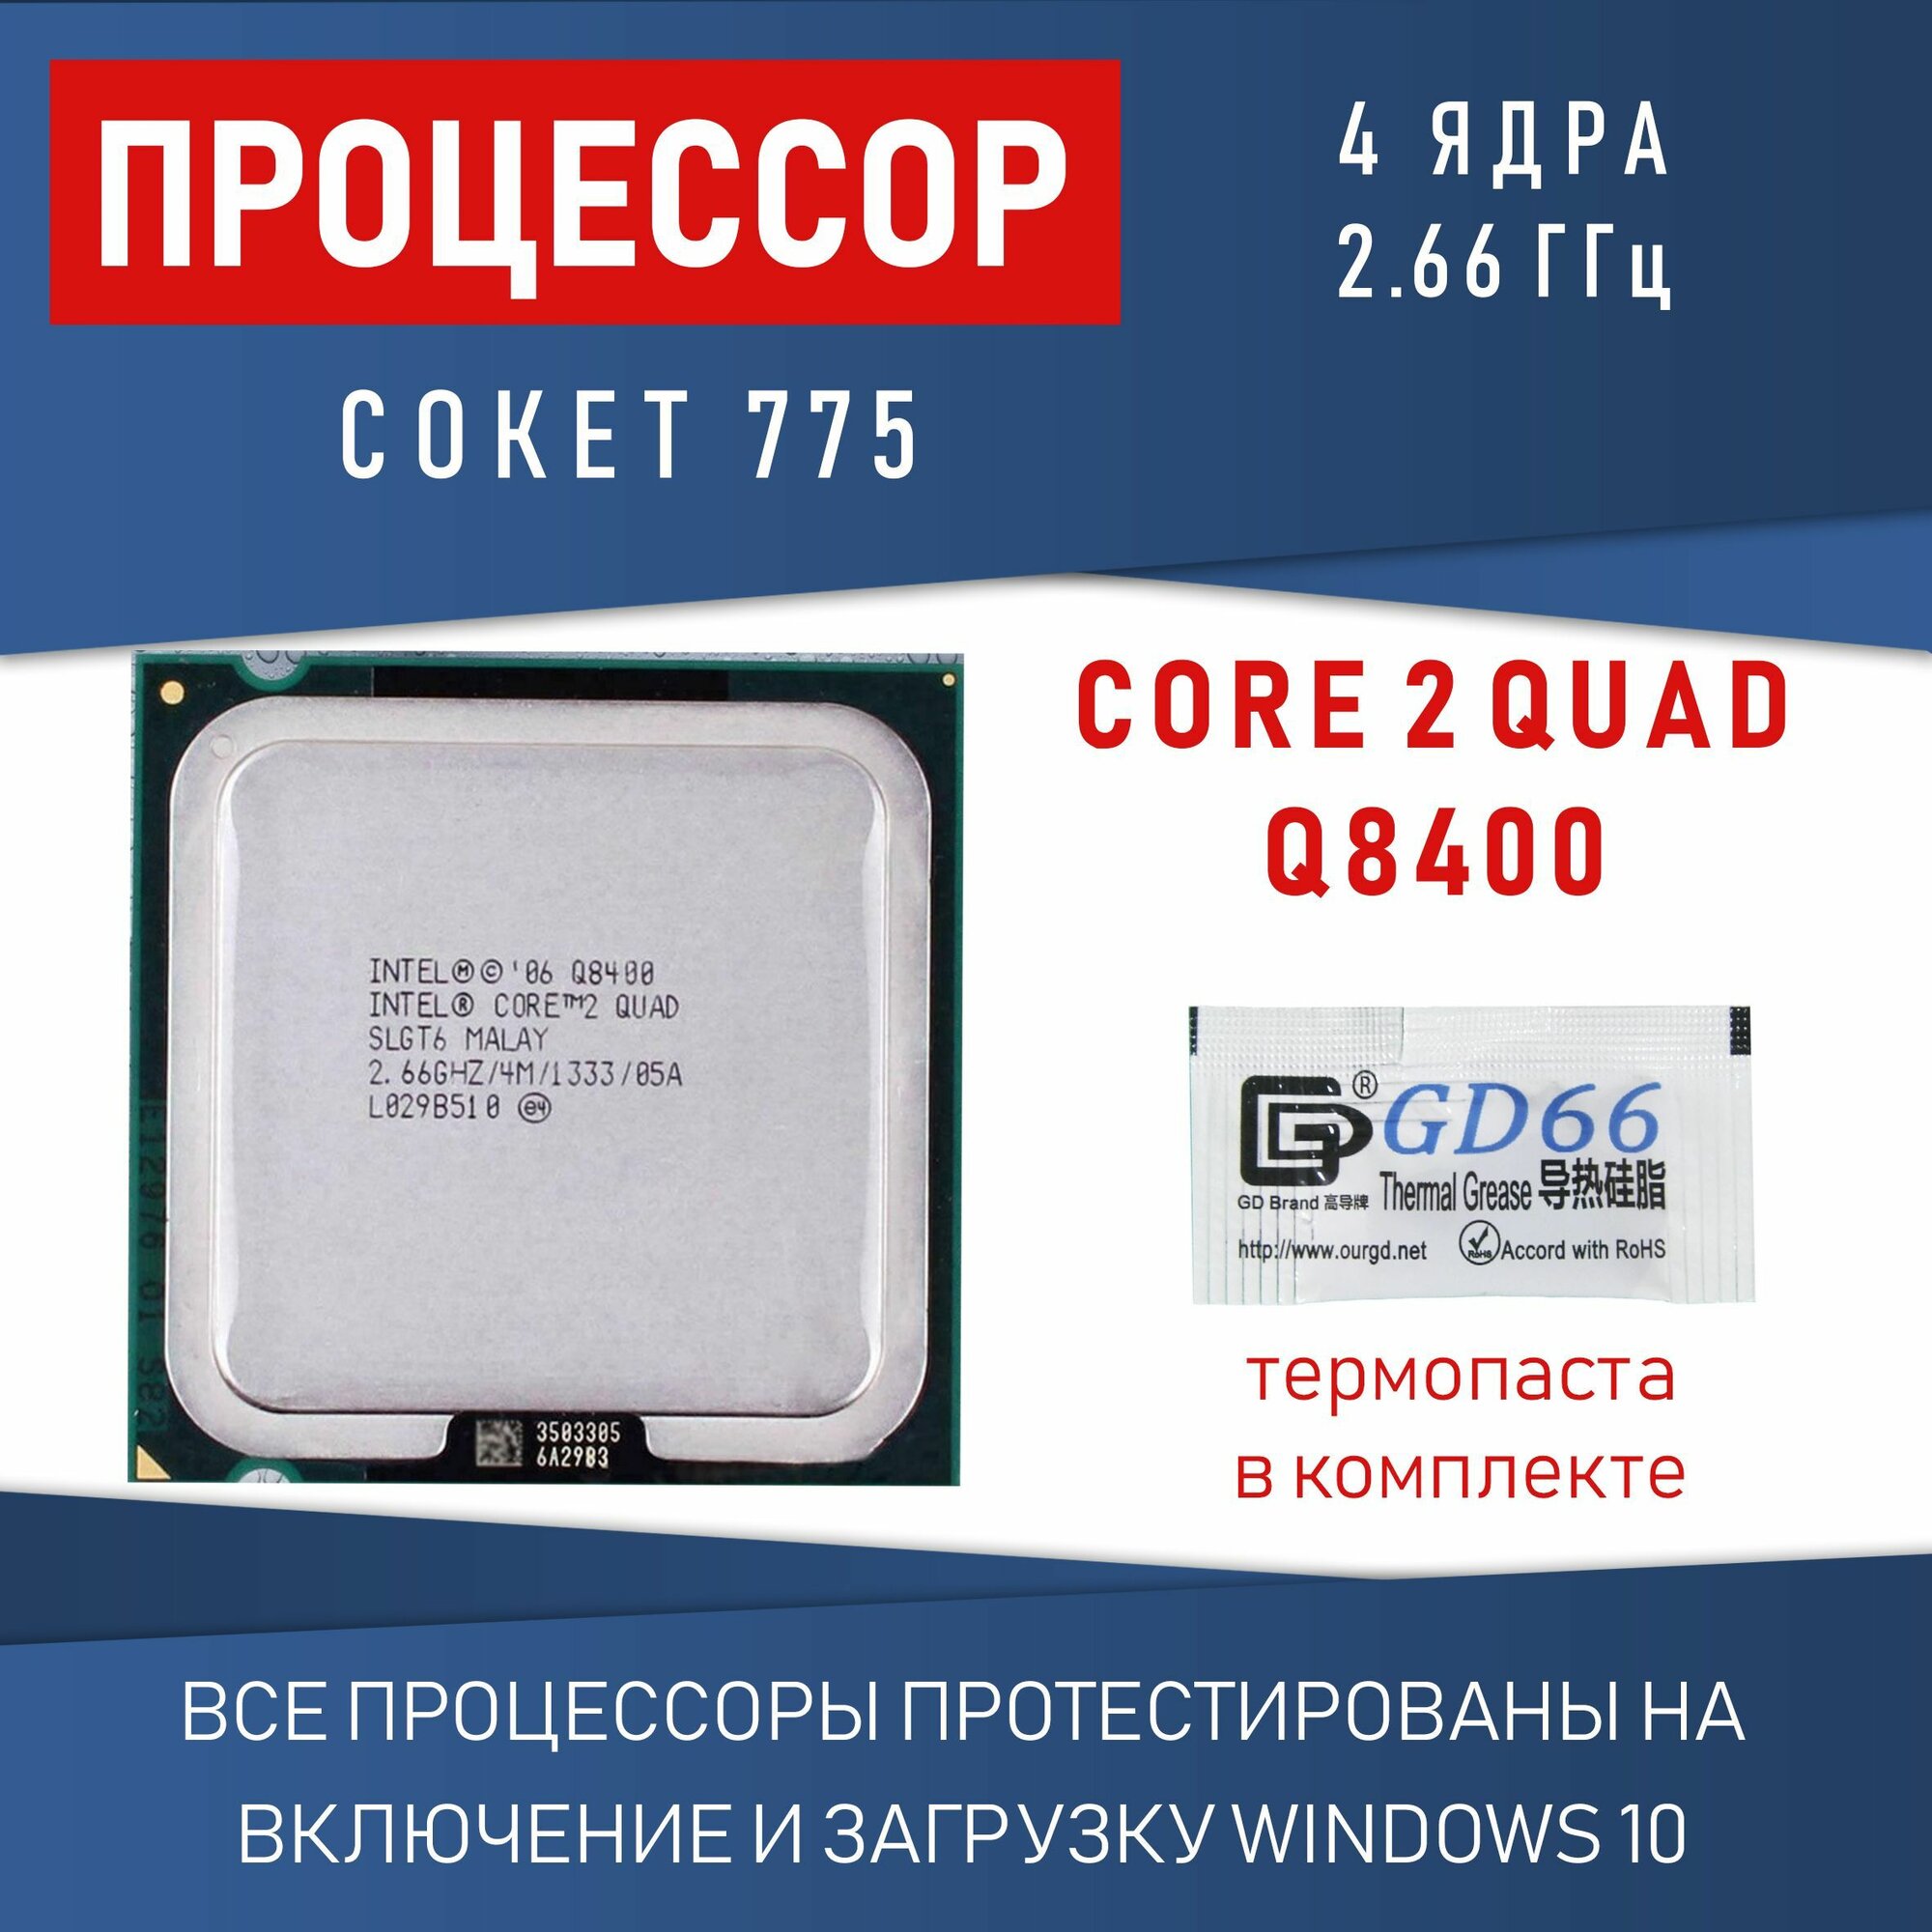 Процессор Intel Core 2 Quad Q8400 сокет 775 4 ядра 2,66 ГГц 95 Вт OEM